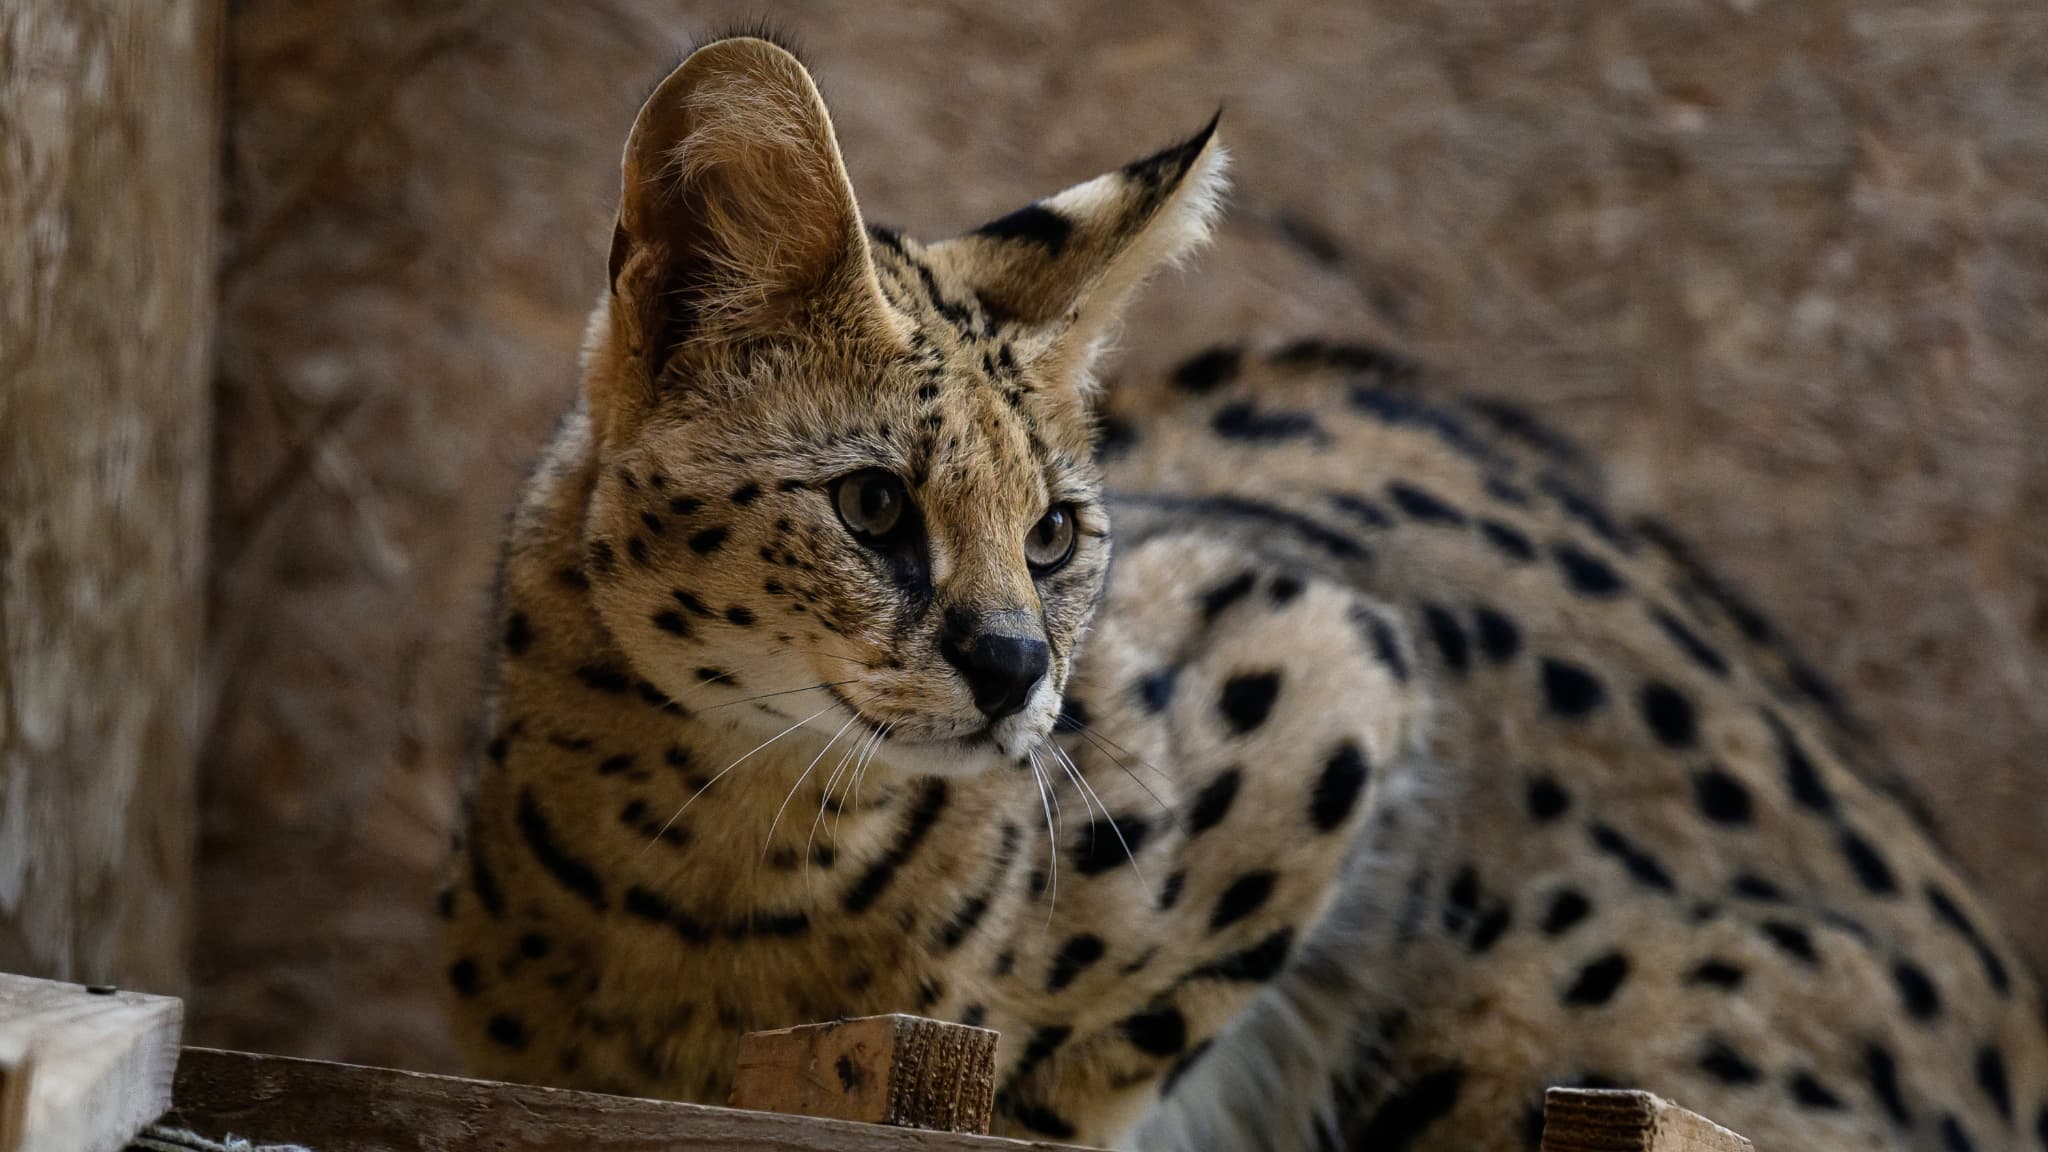 le zoo annonce la "disparition soudaine" de son serval, mort d'une septicémie